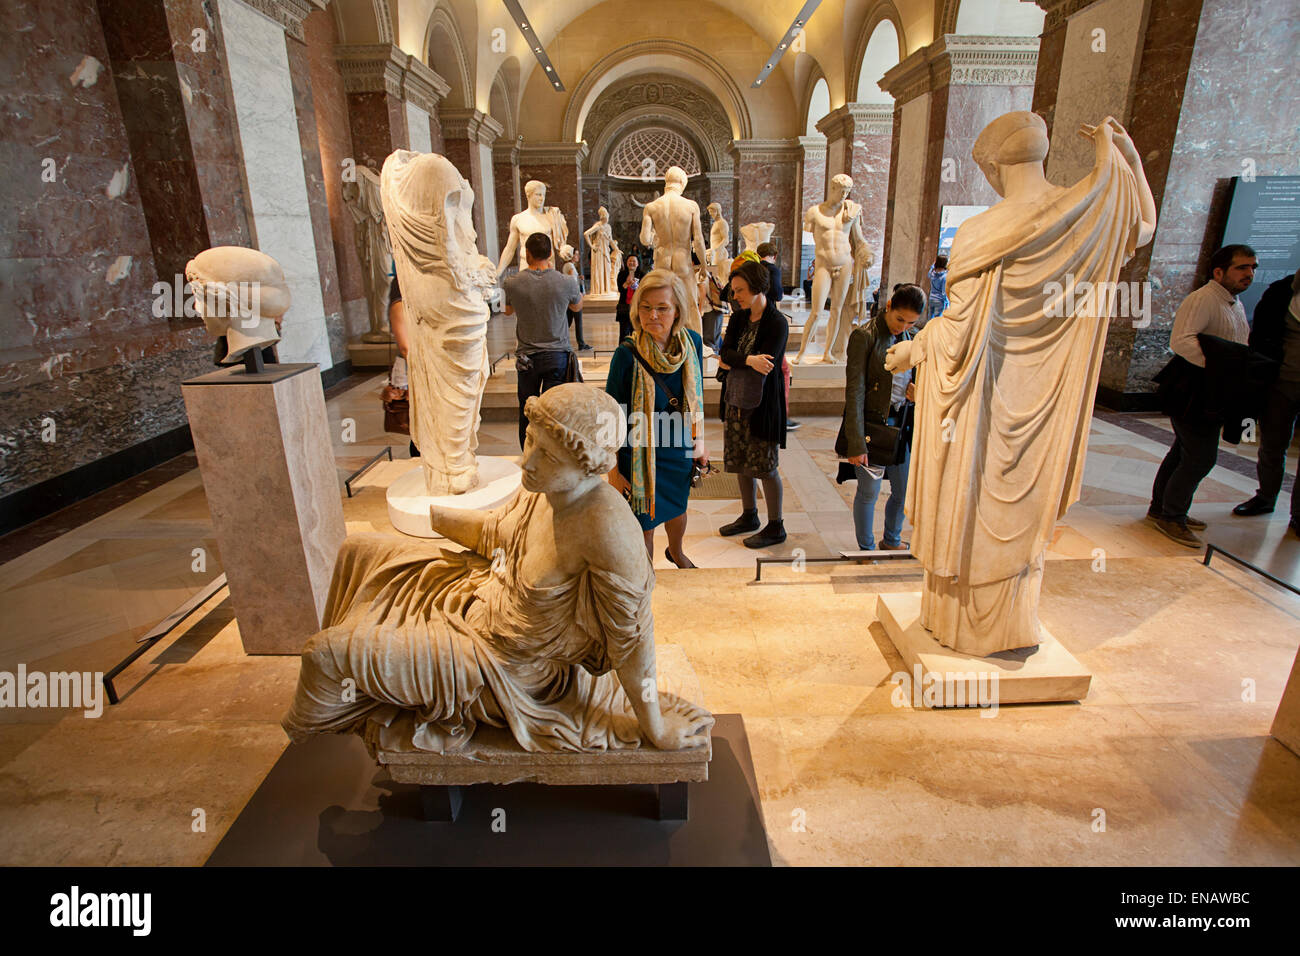 Ancient Greek art artwork sculpture sculptures. Musée du Louvre, Paris, France Stock Photo